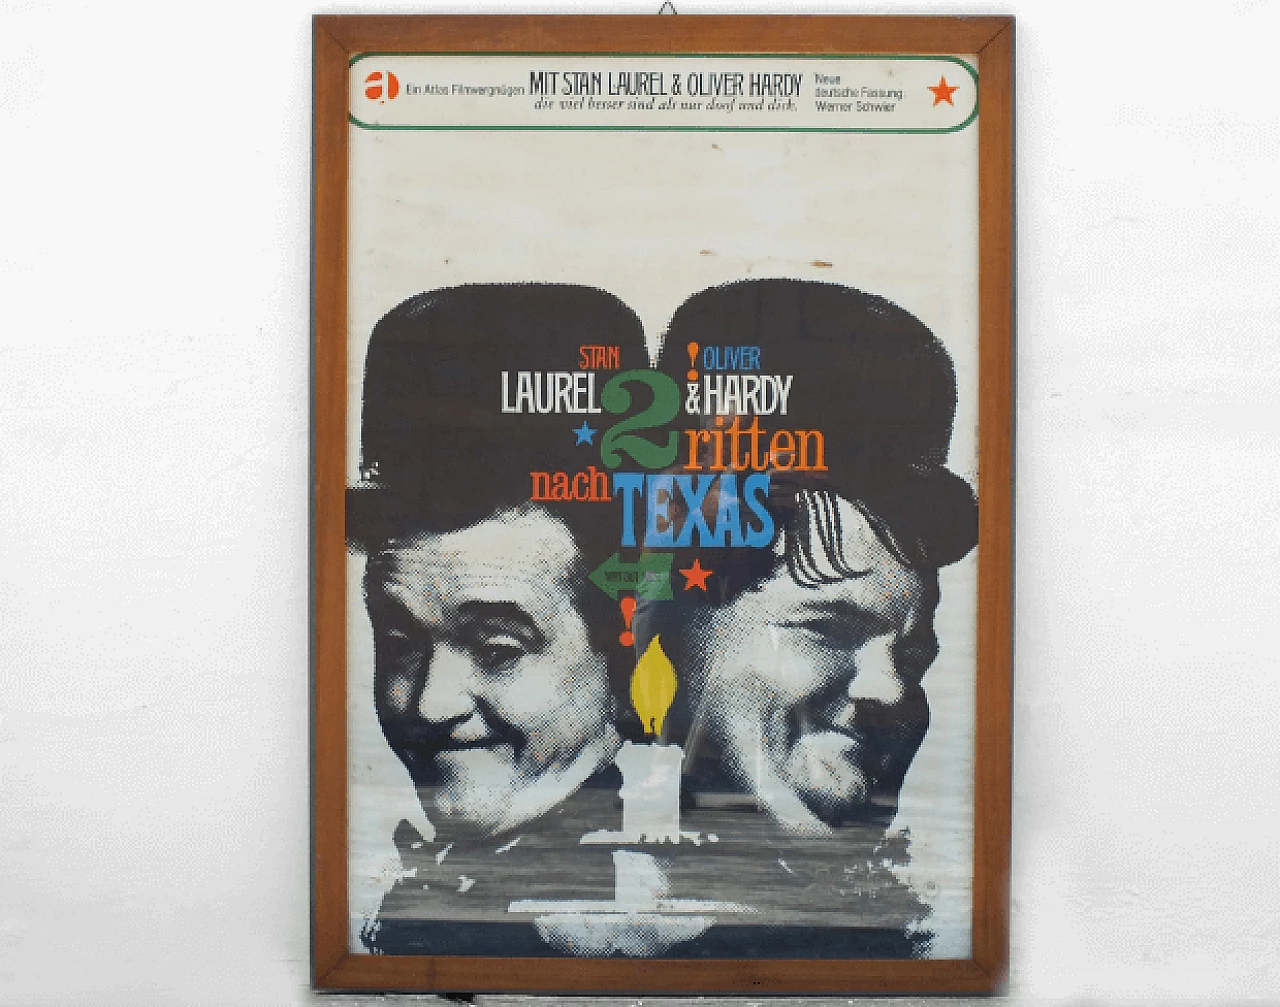 Laurel & Hardy - Zwei ritten nach Texas movie poster, 1960s 3